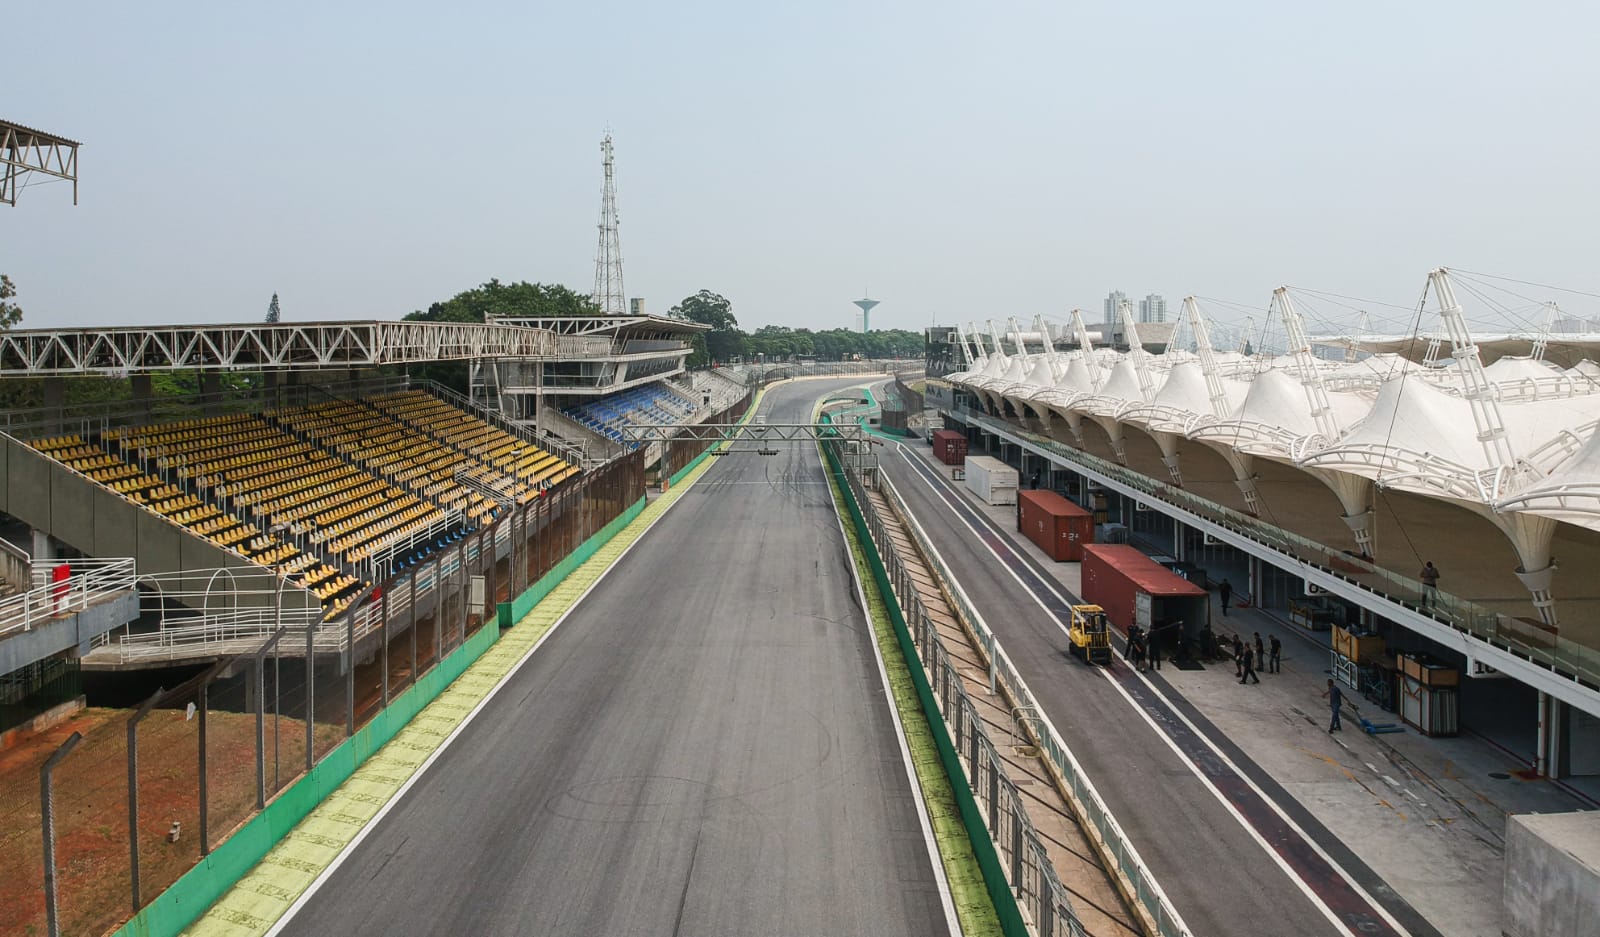 Formula 1 - Brasil 2021 - São Paulo GP - Interlagos - Largada